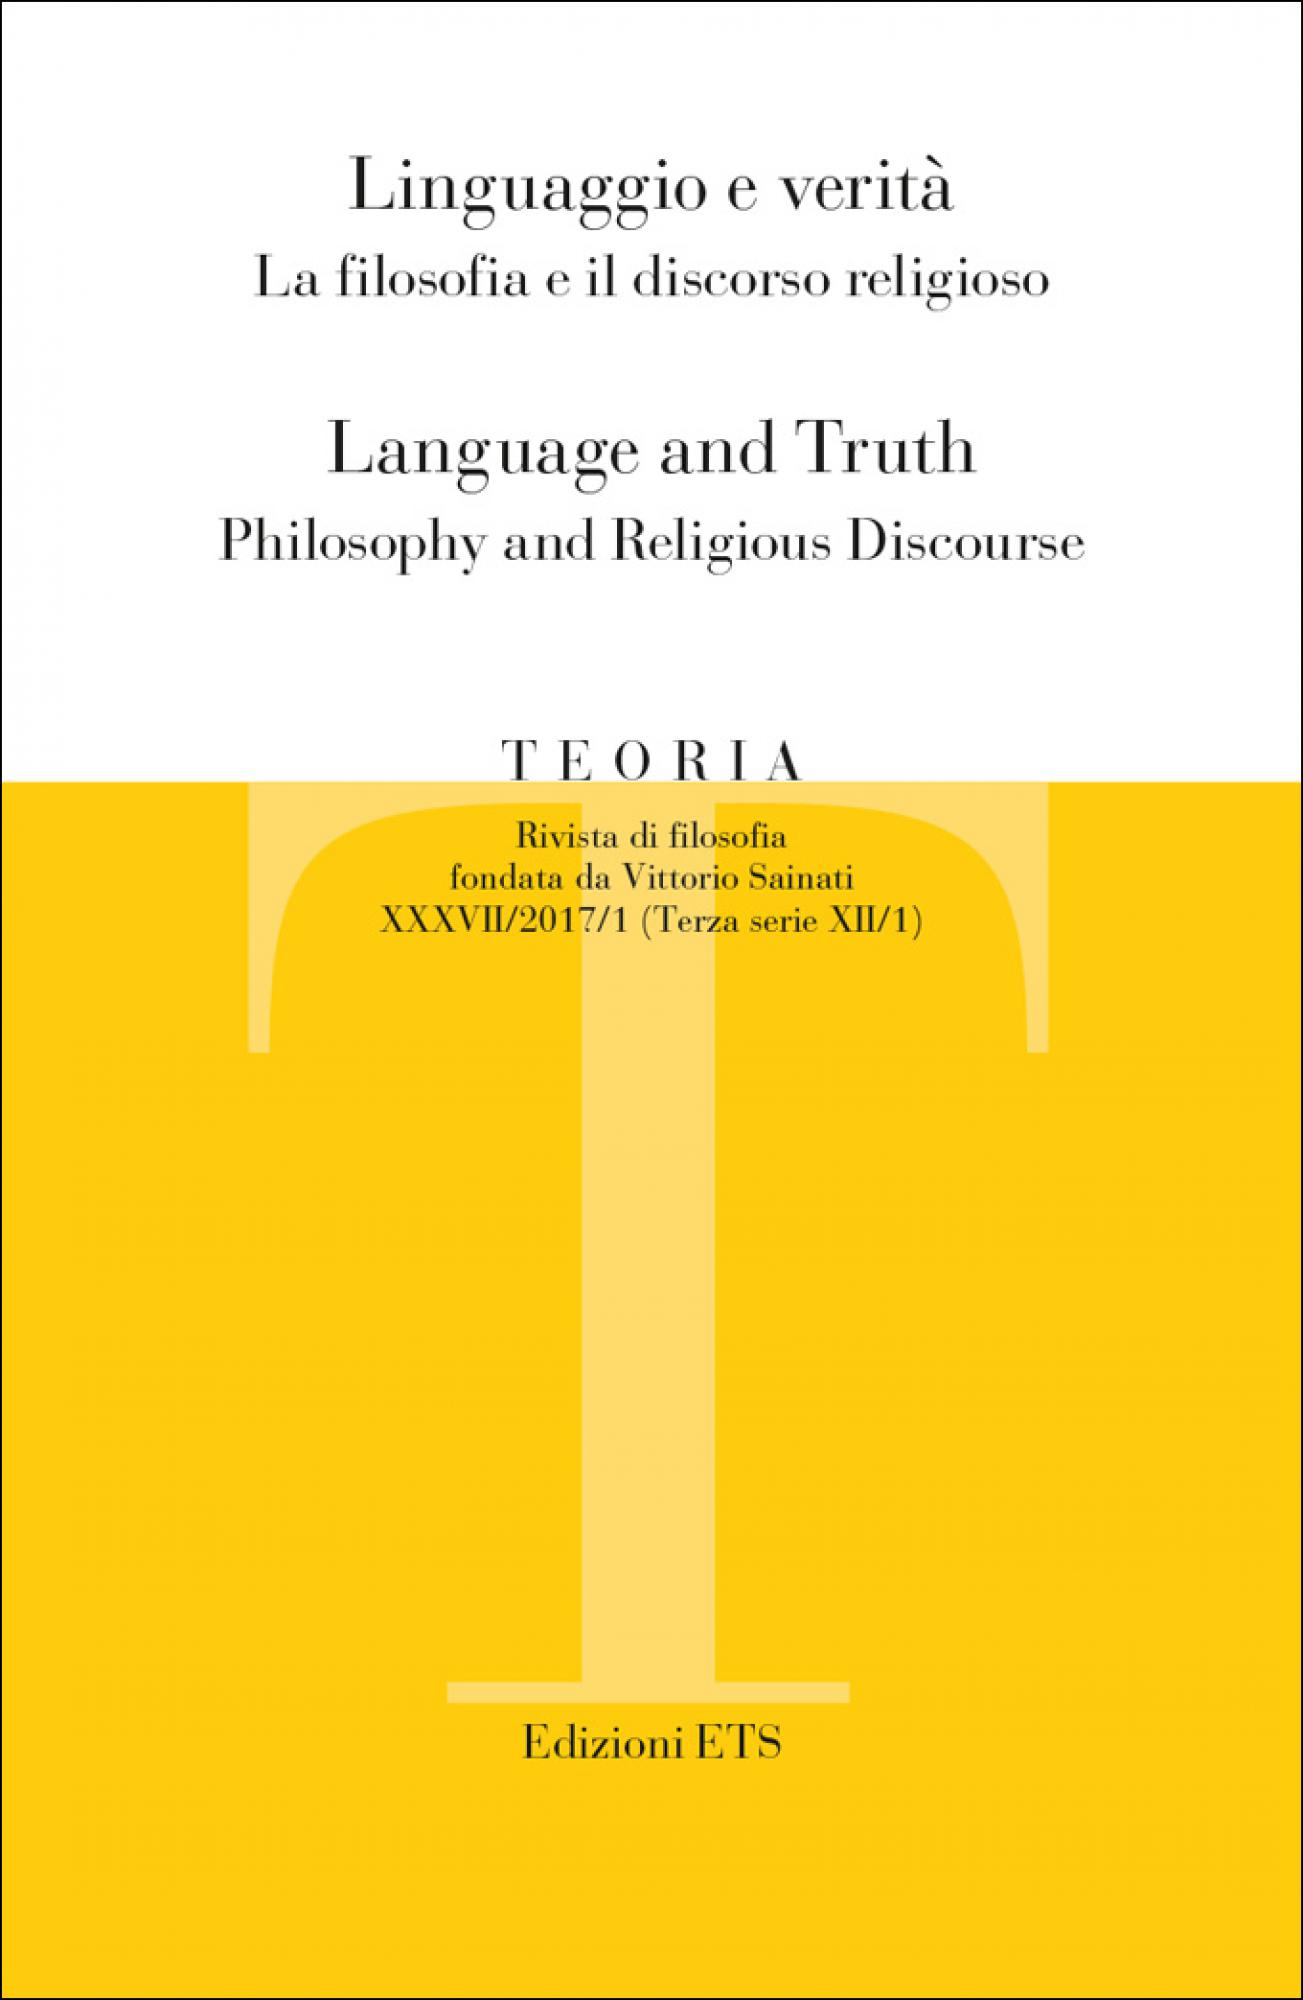 Teoria 2017-1.Linguaggio e verità. La filosofia e il discorso religioso / Language and Truth. Philosophy and Religious Discourse